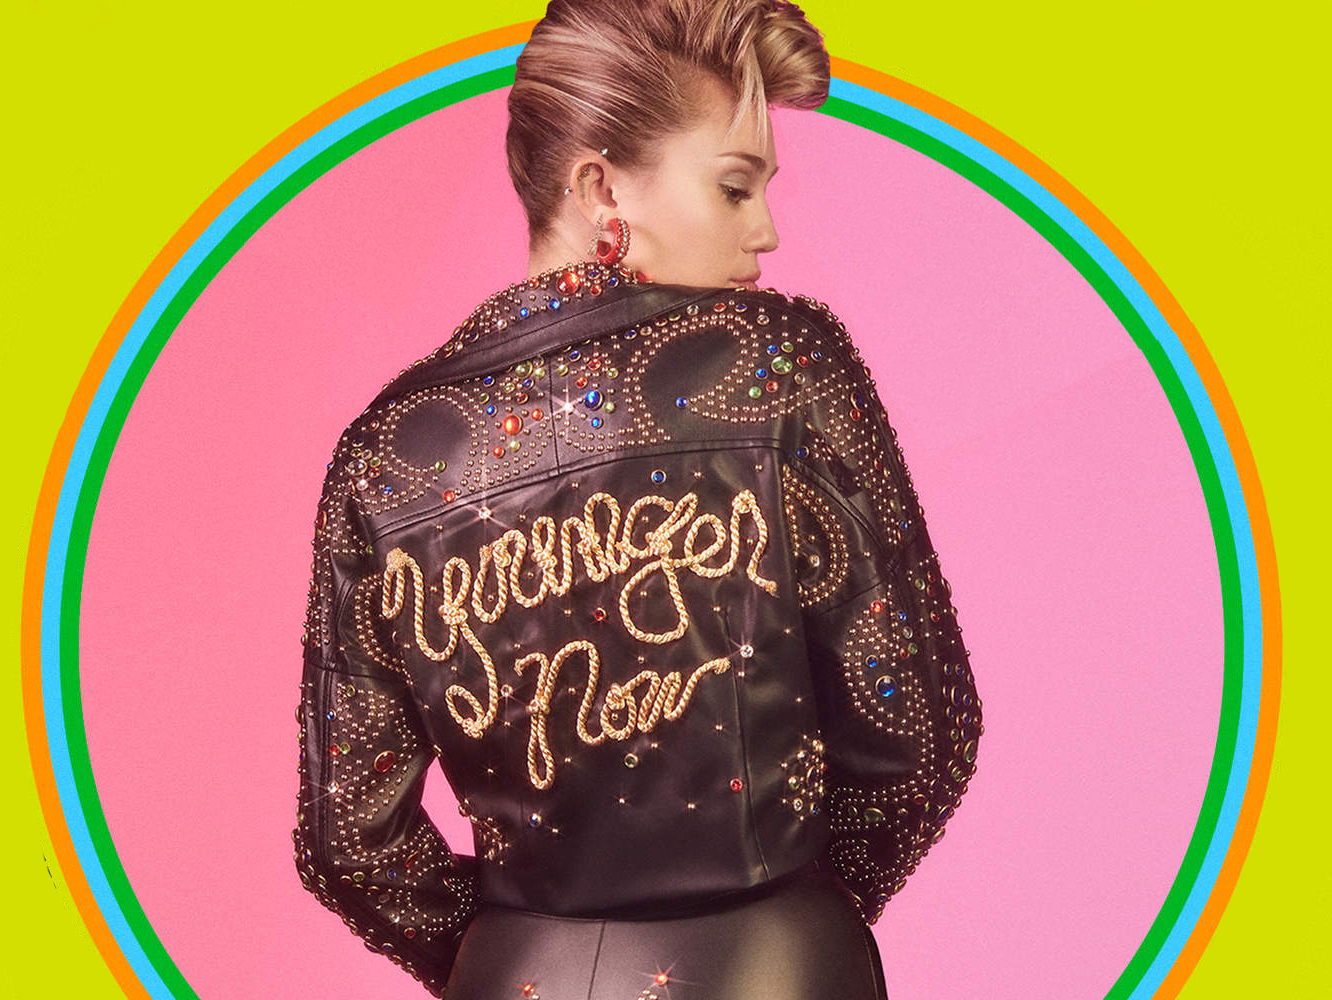  ‘Younger Now’ | El disco en el que Miley Cyrus se tomó demasiado en serio